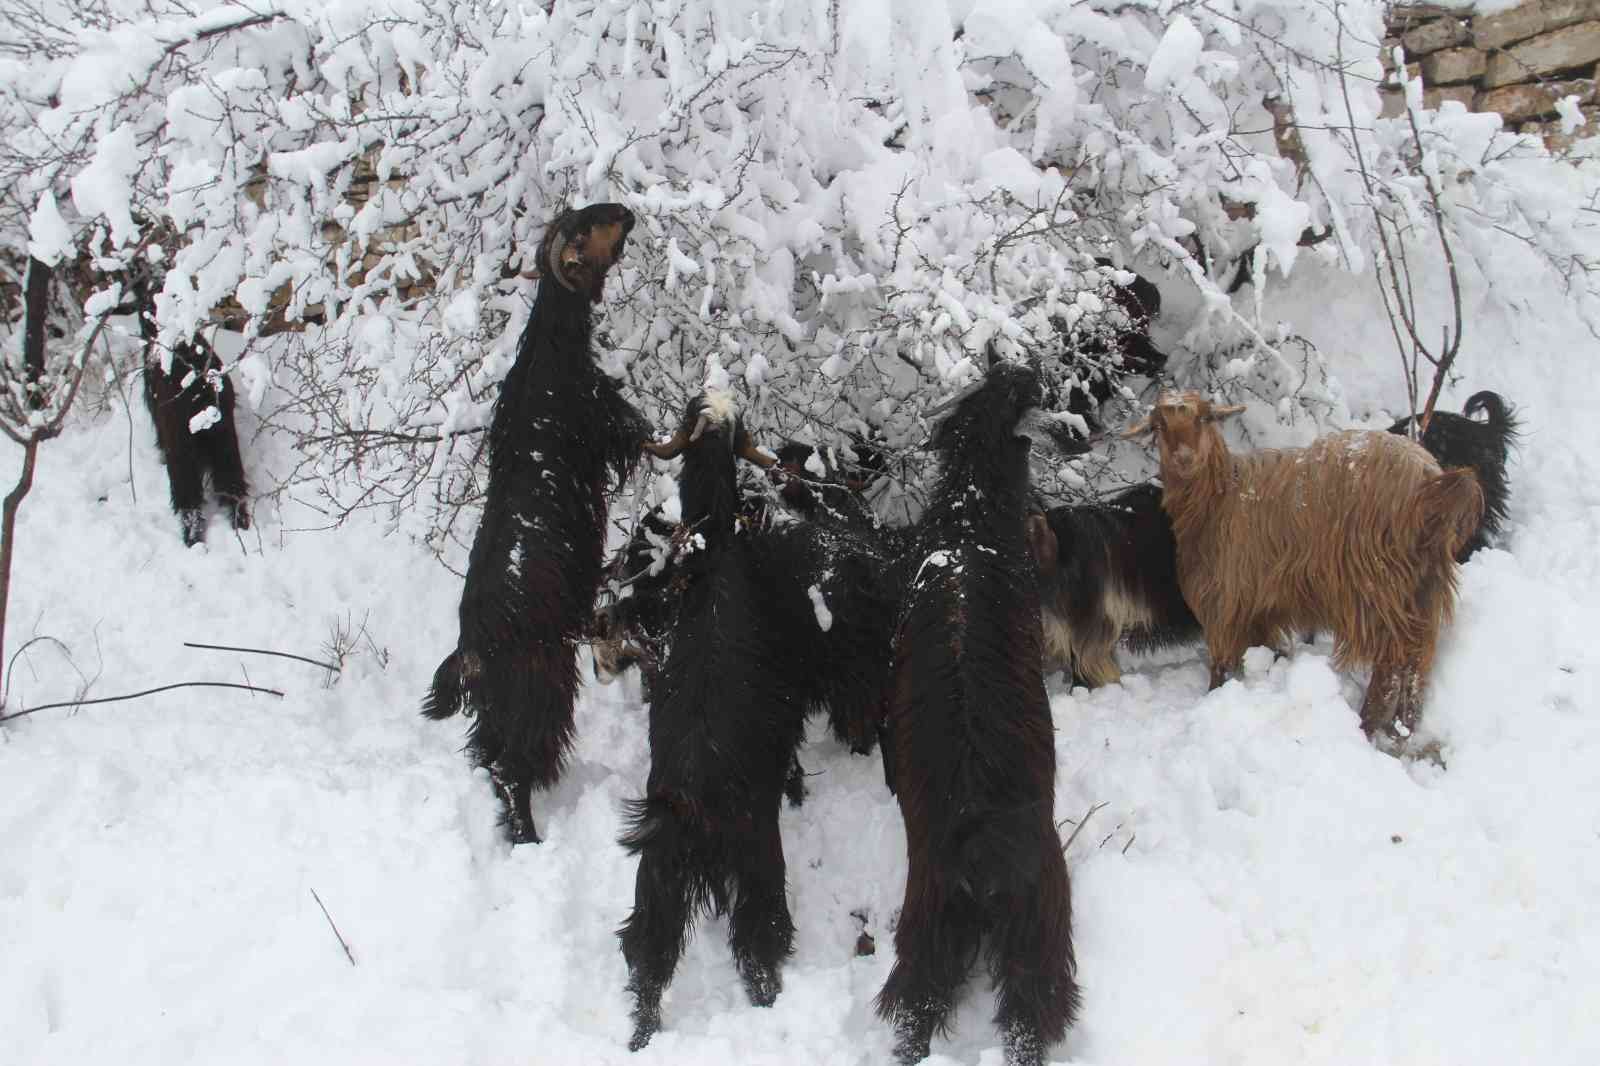 Doğal yaşam alanları karla kaplanan dağ keçileri, ağaç dallarıyla beslendi #konya